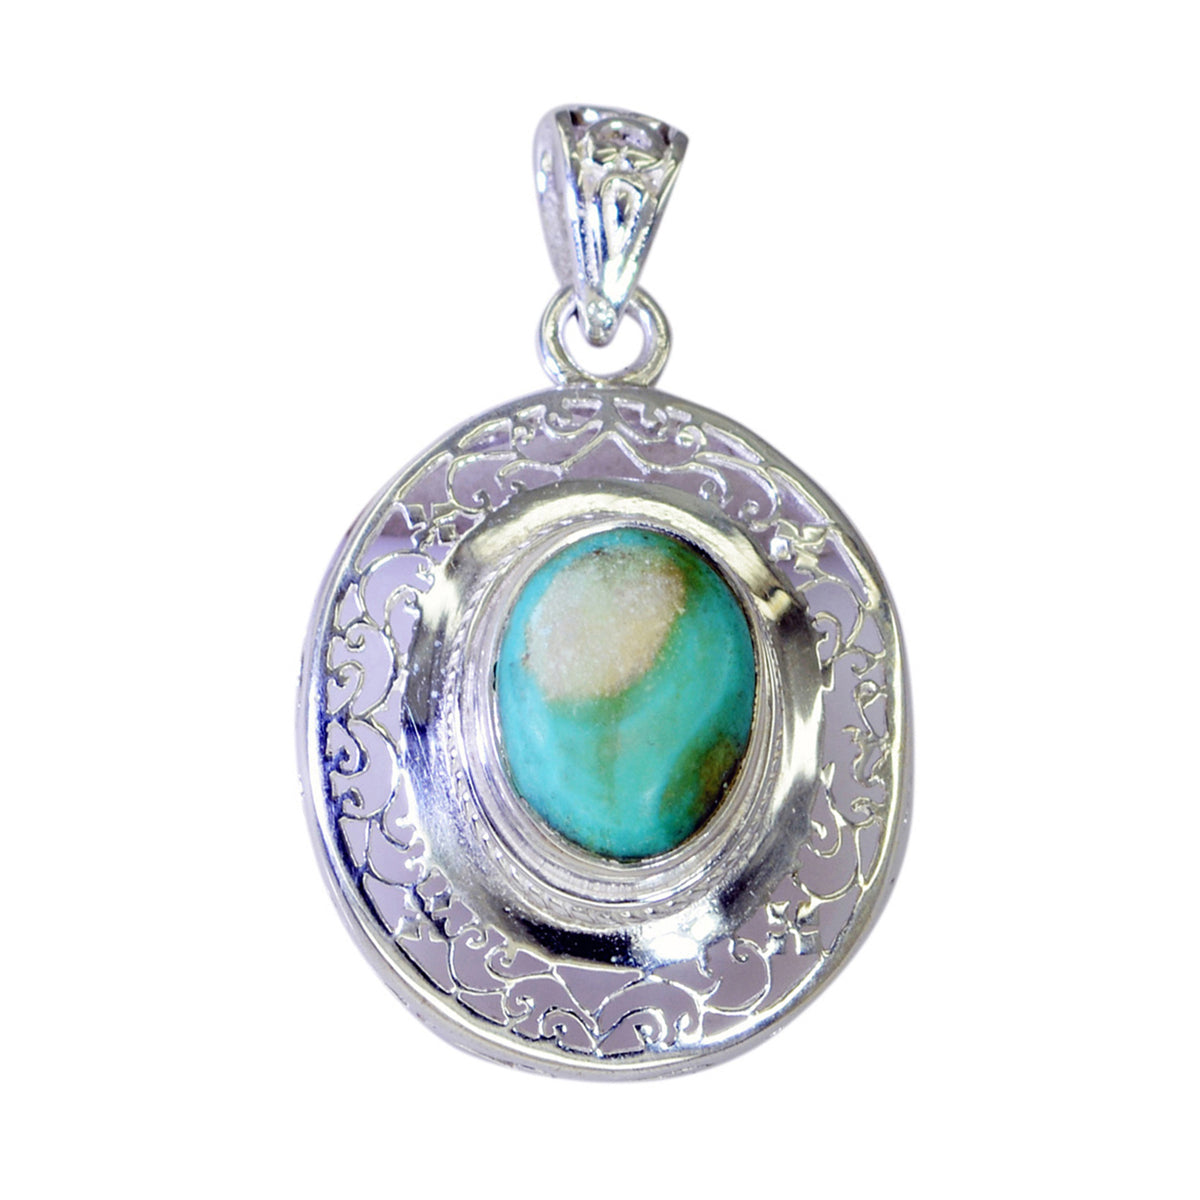 Riyo jolie pierre précieuse ovale cabochon bleu turquoise pendentif en argent sterling 1008 cadeau pour petite amie